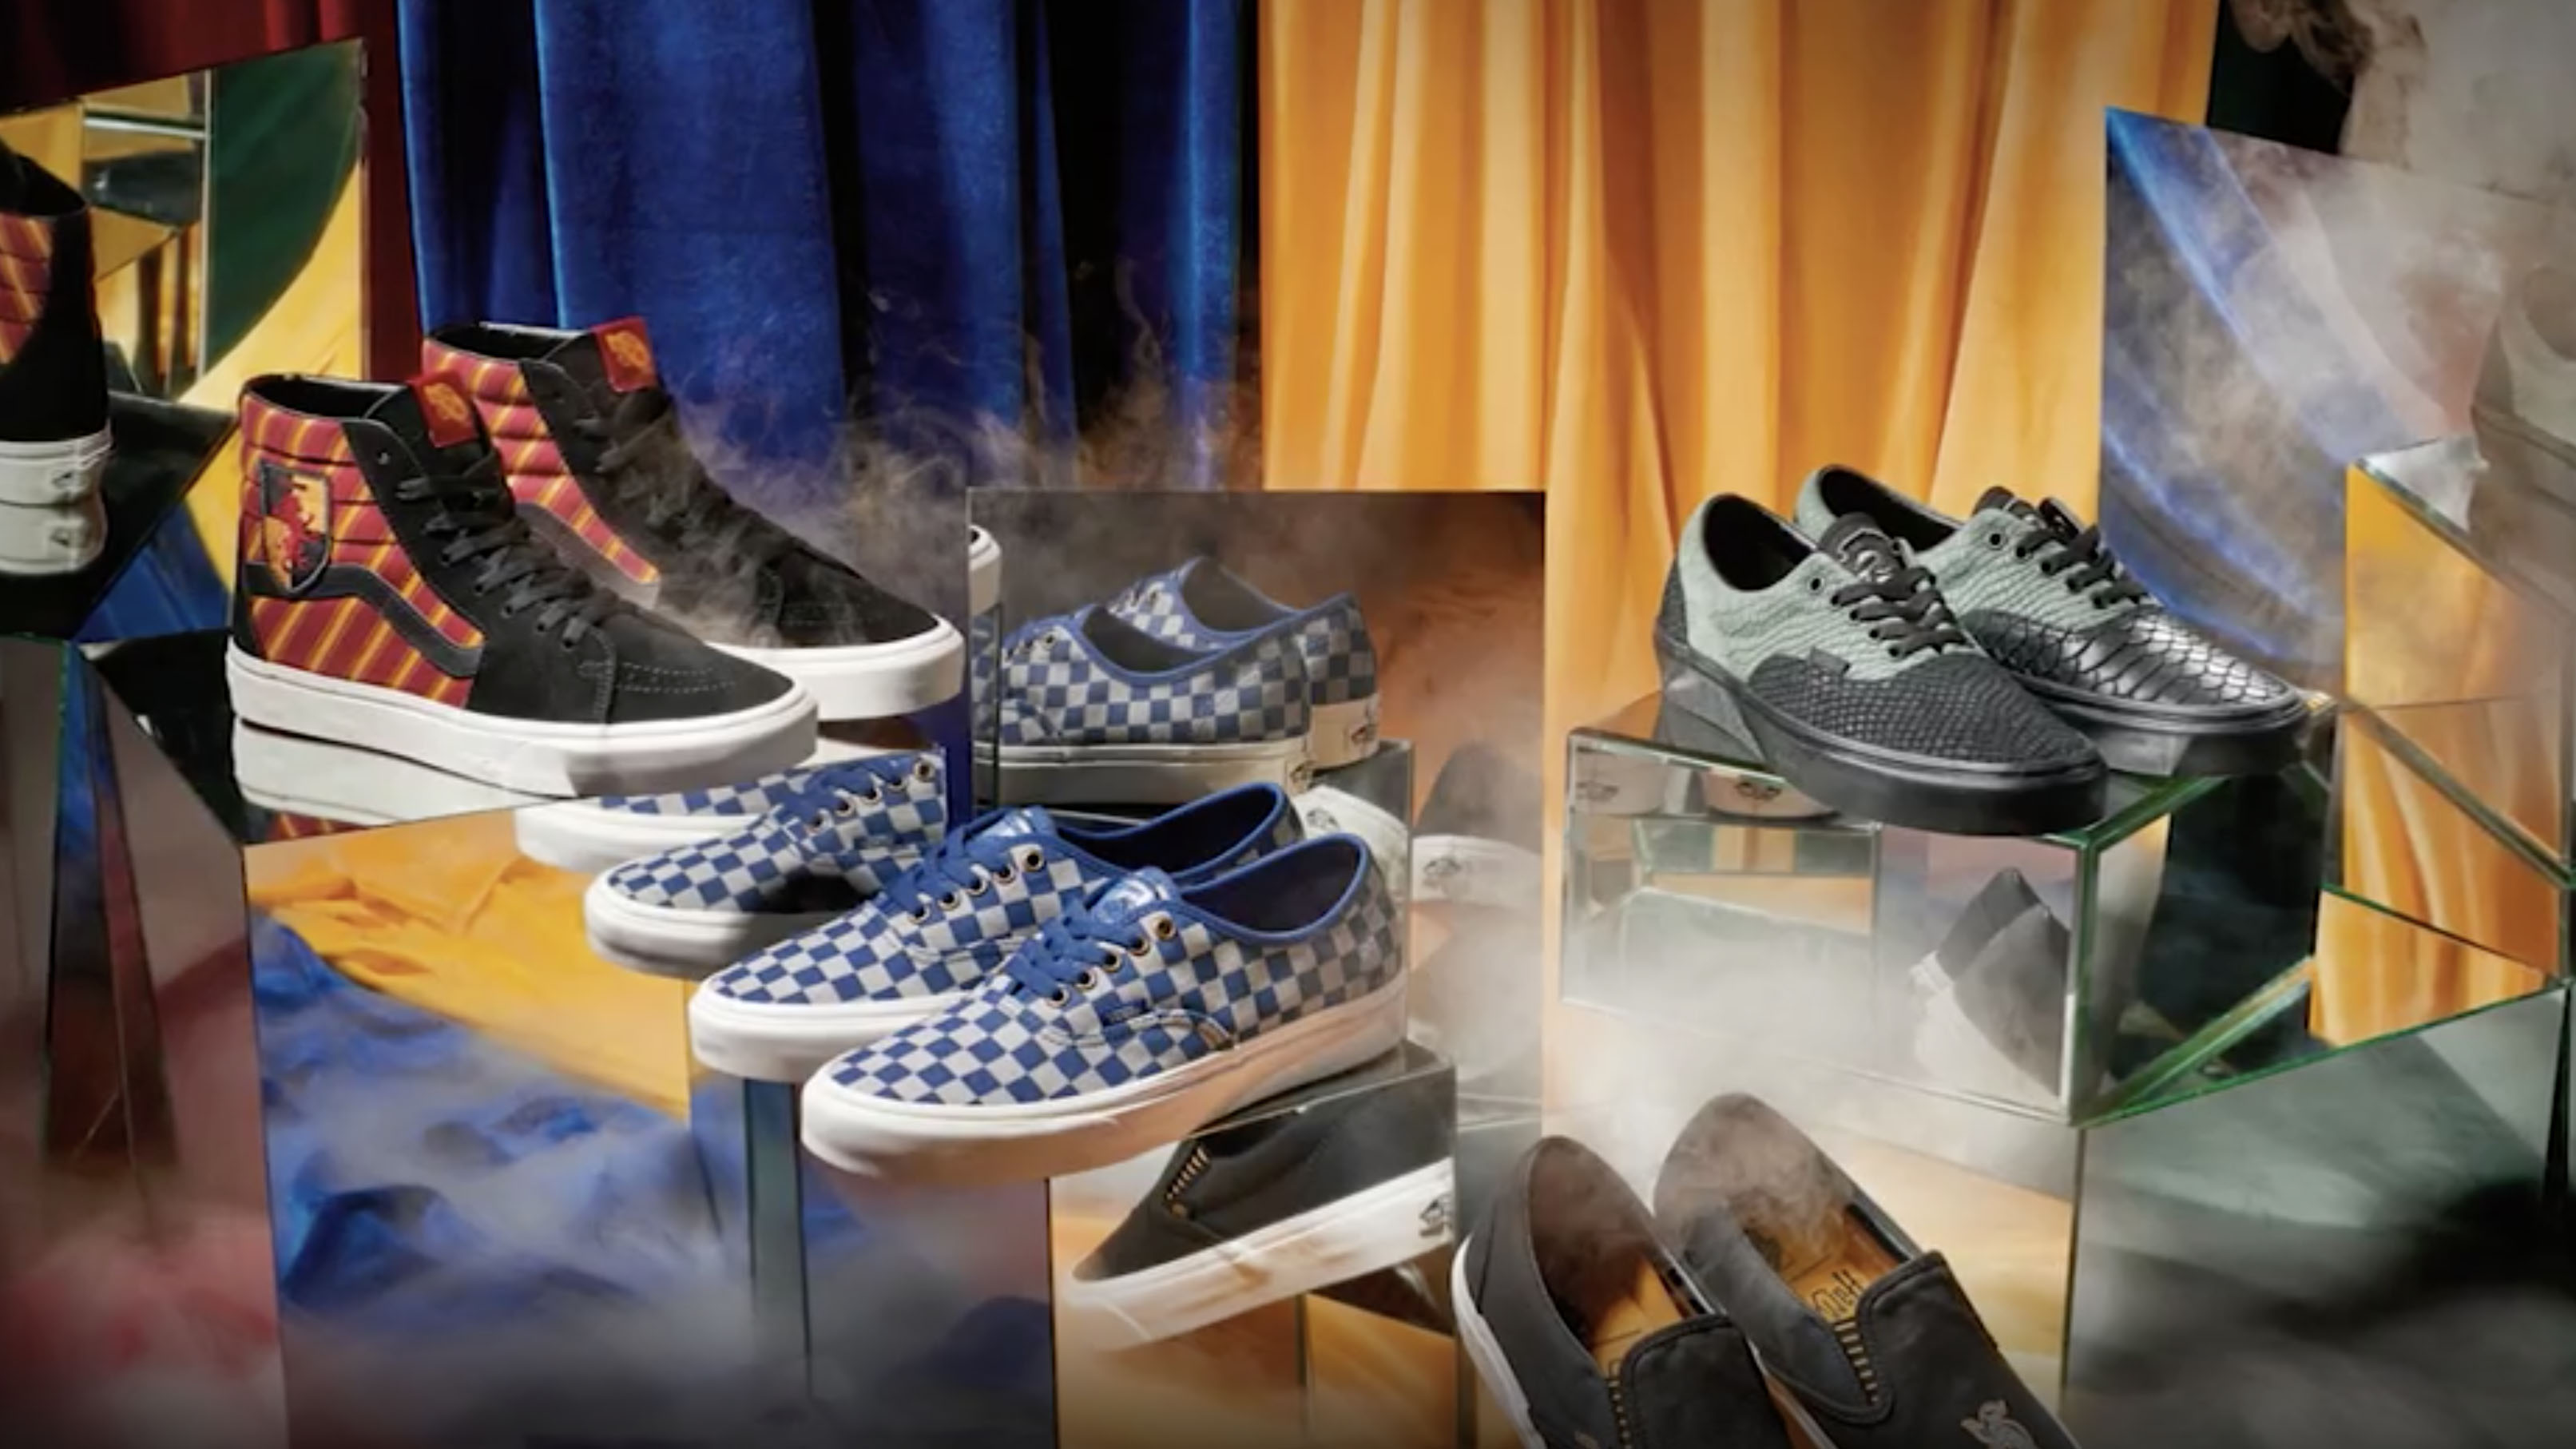 Harry Potter y Vans lanzan unas zapatillas inspiradas en la saga del niño  mago - CNN Video